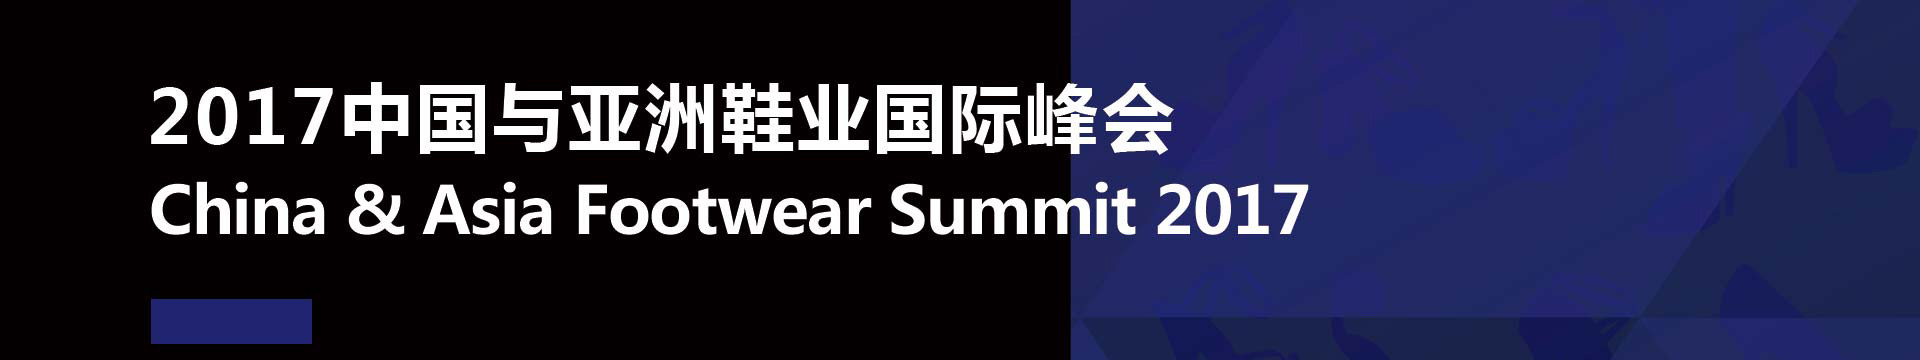 2017中国与亚洲鞋业国际峰会